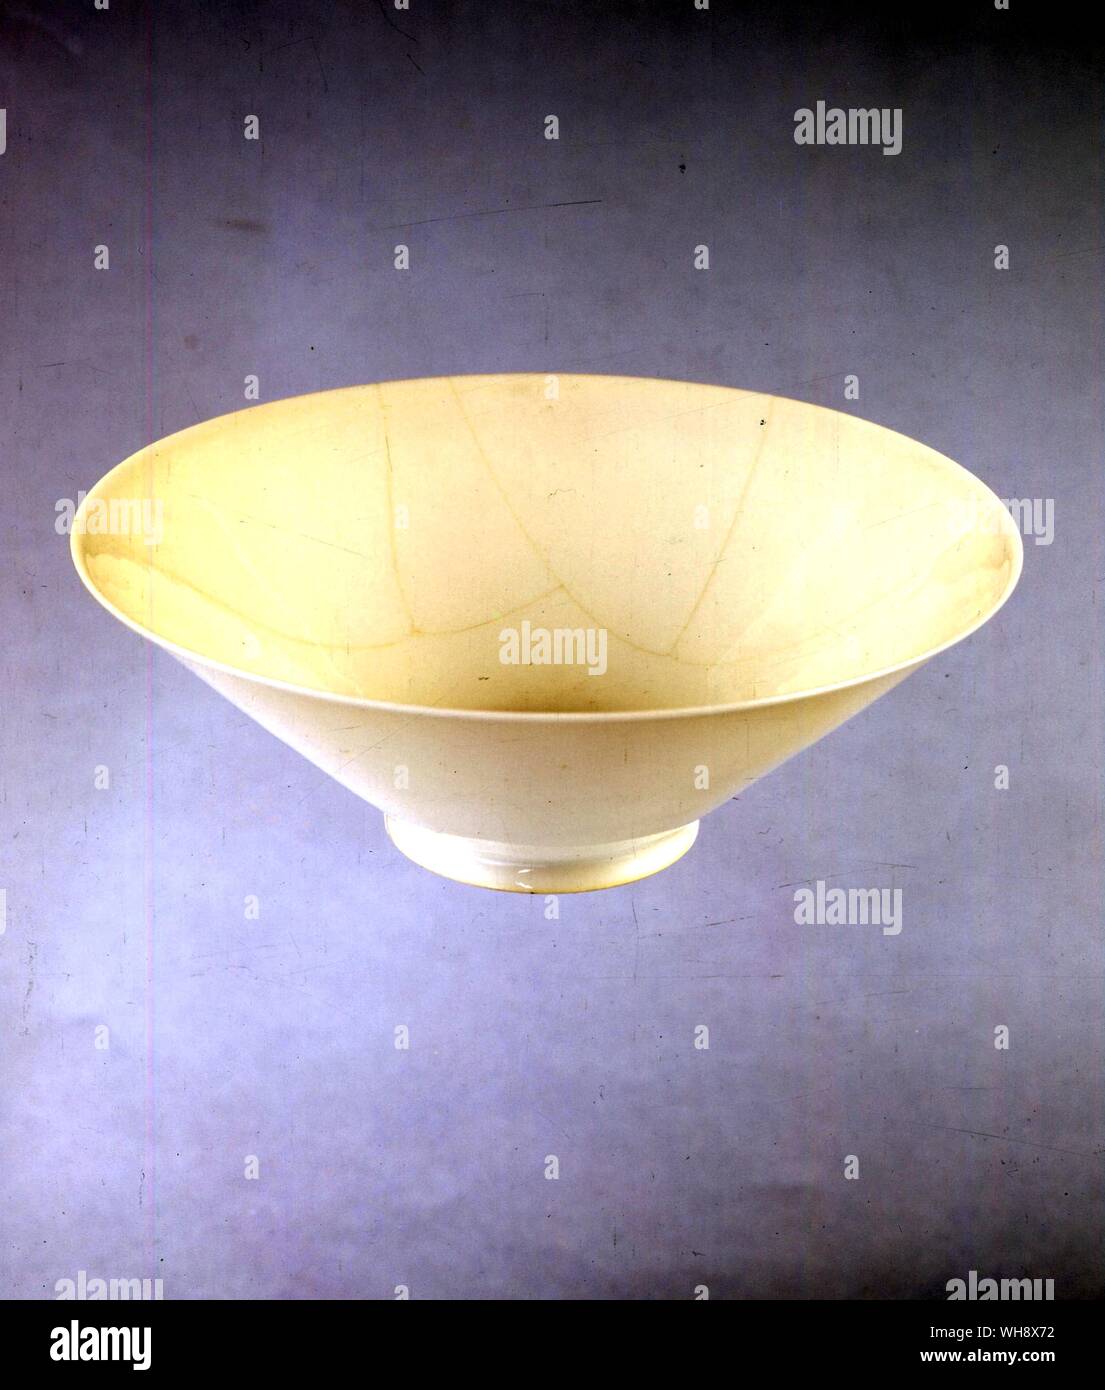 Papel de porcelana fina Yung bajo la copa de vino, desde los hornos de Chen Ching Te Foto de stock